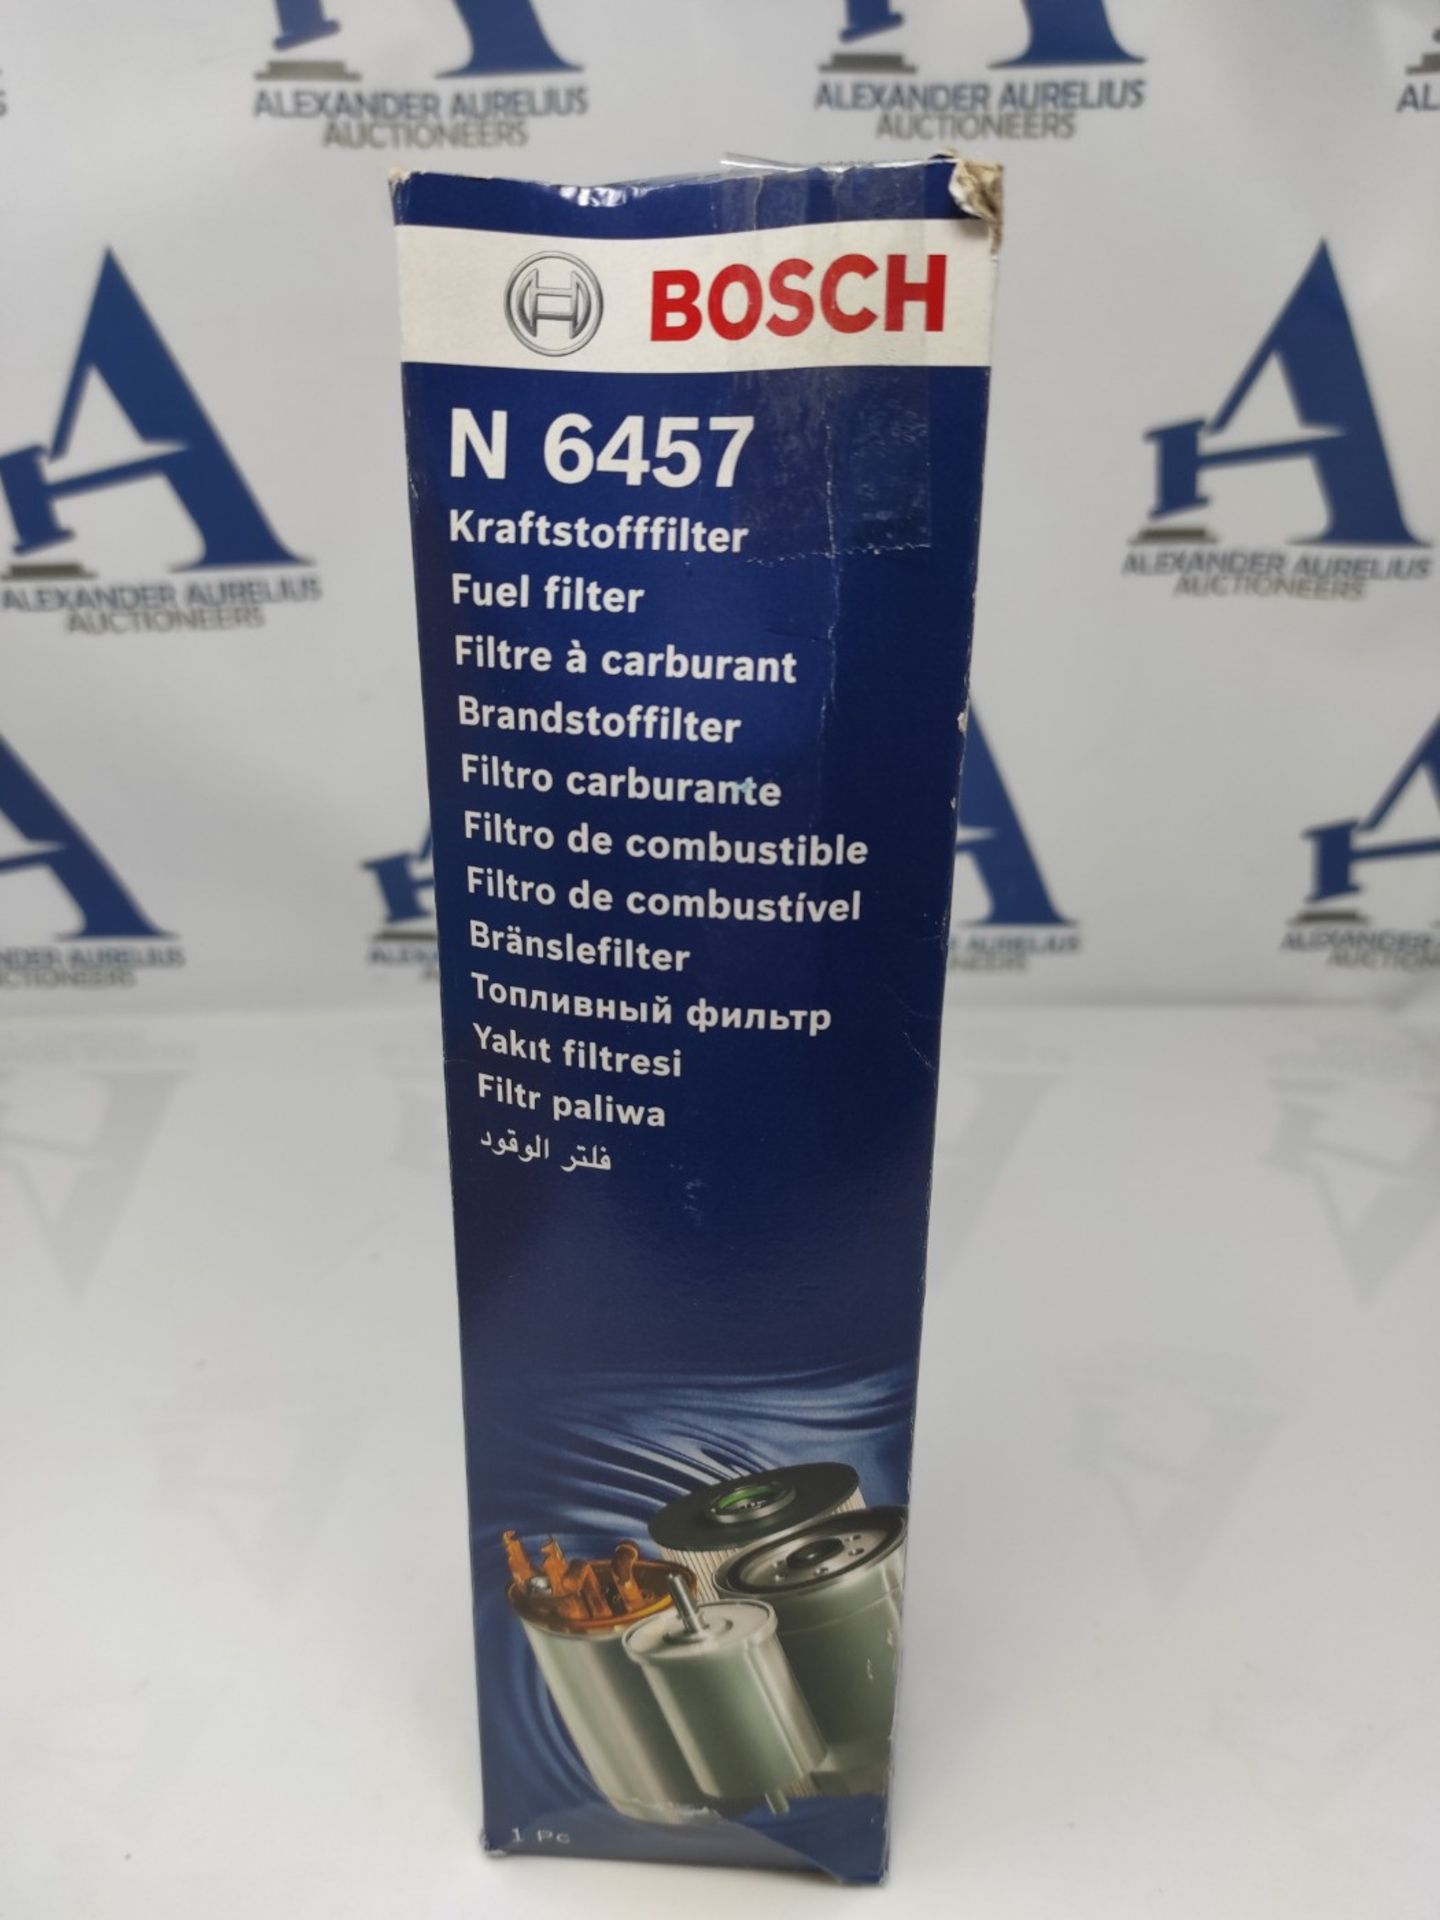 Bosch N6457 - Diesel Filter for Cars - Bild 3 aus 3